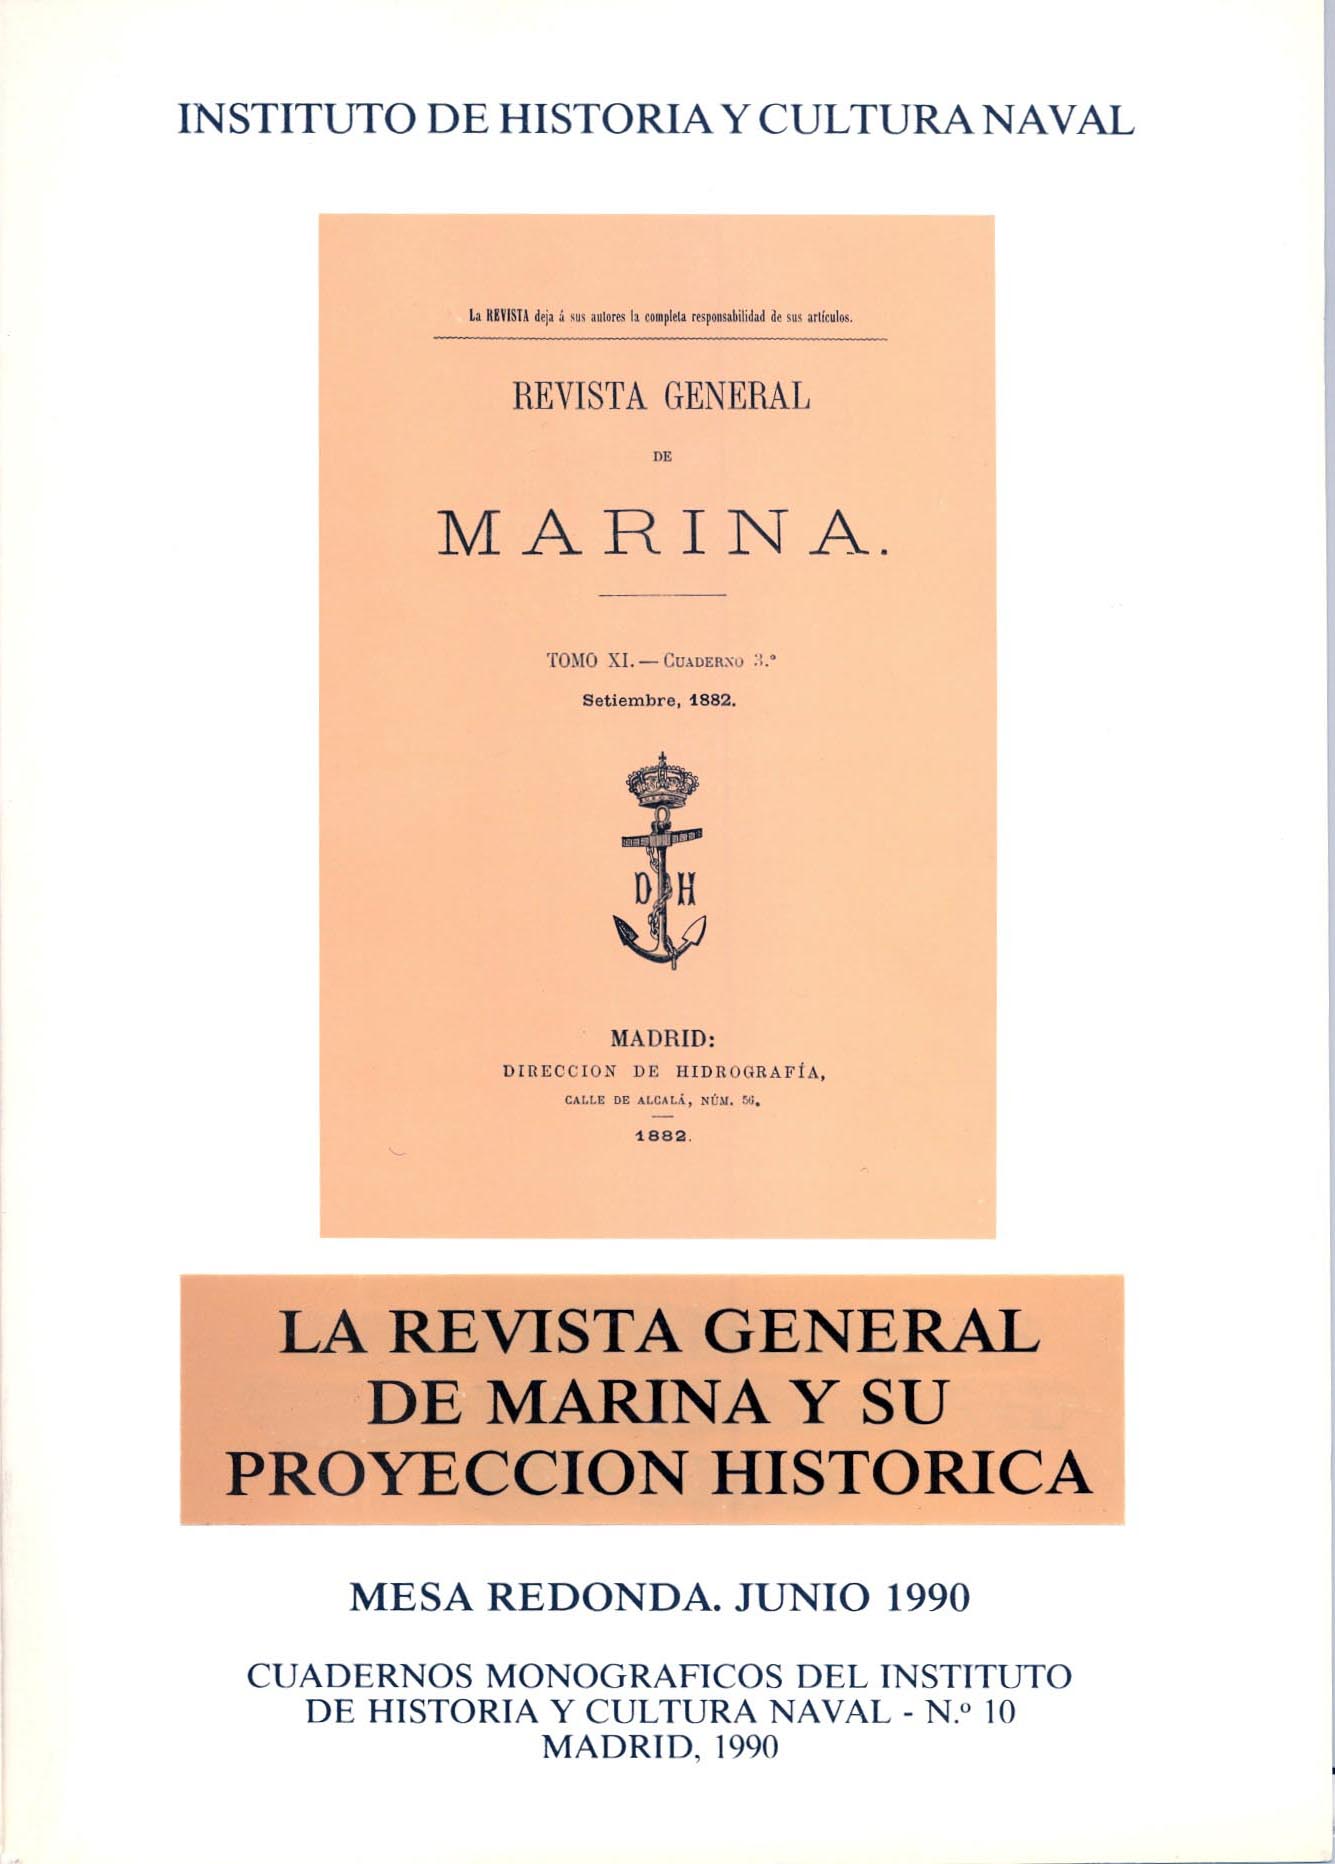 La Revista General de Marina y su proyección histórica